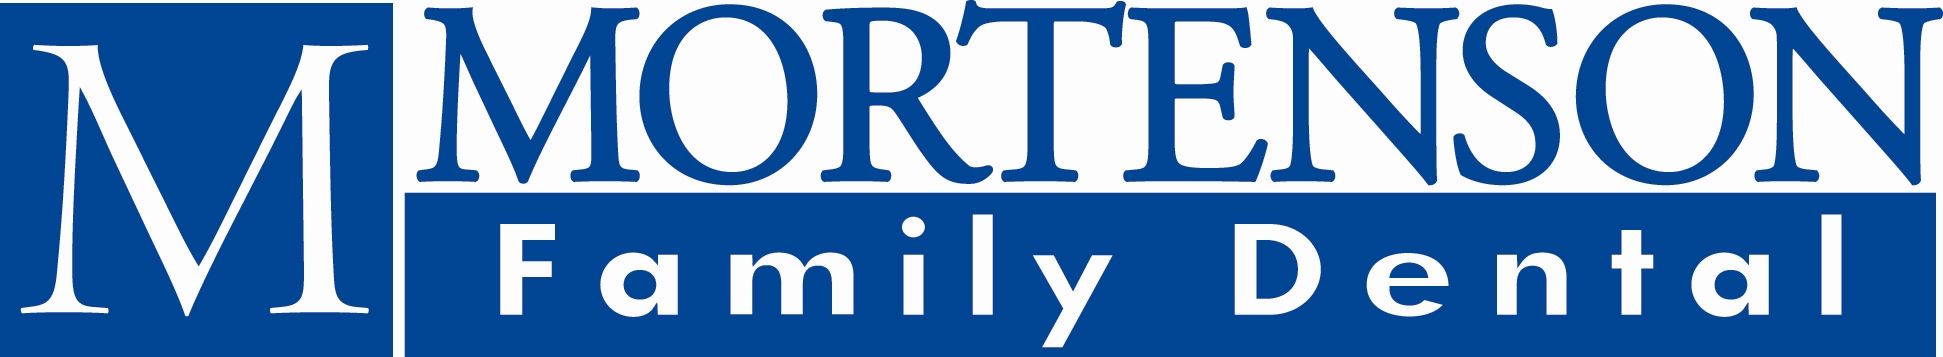 Mortenson Family Dental logo